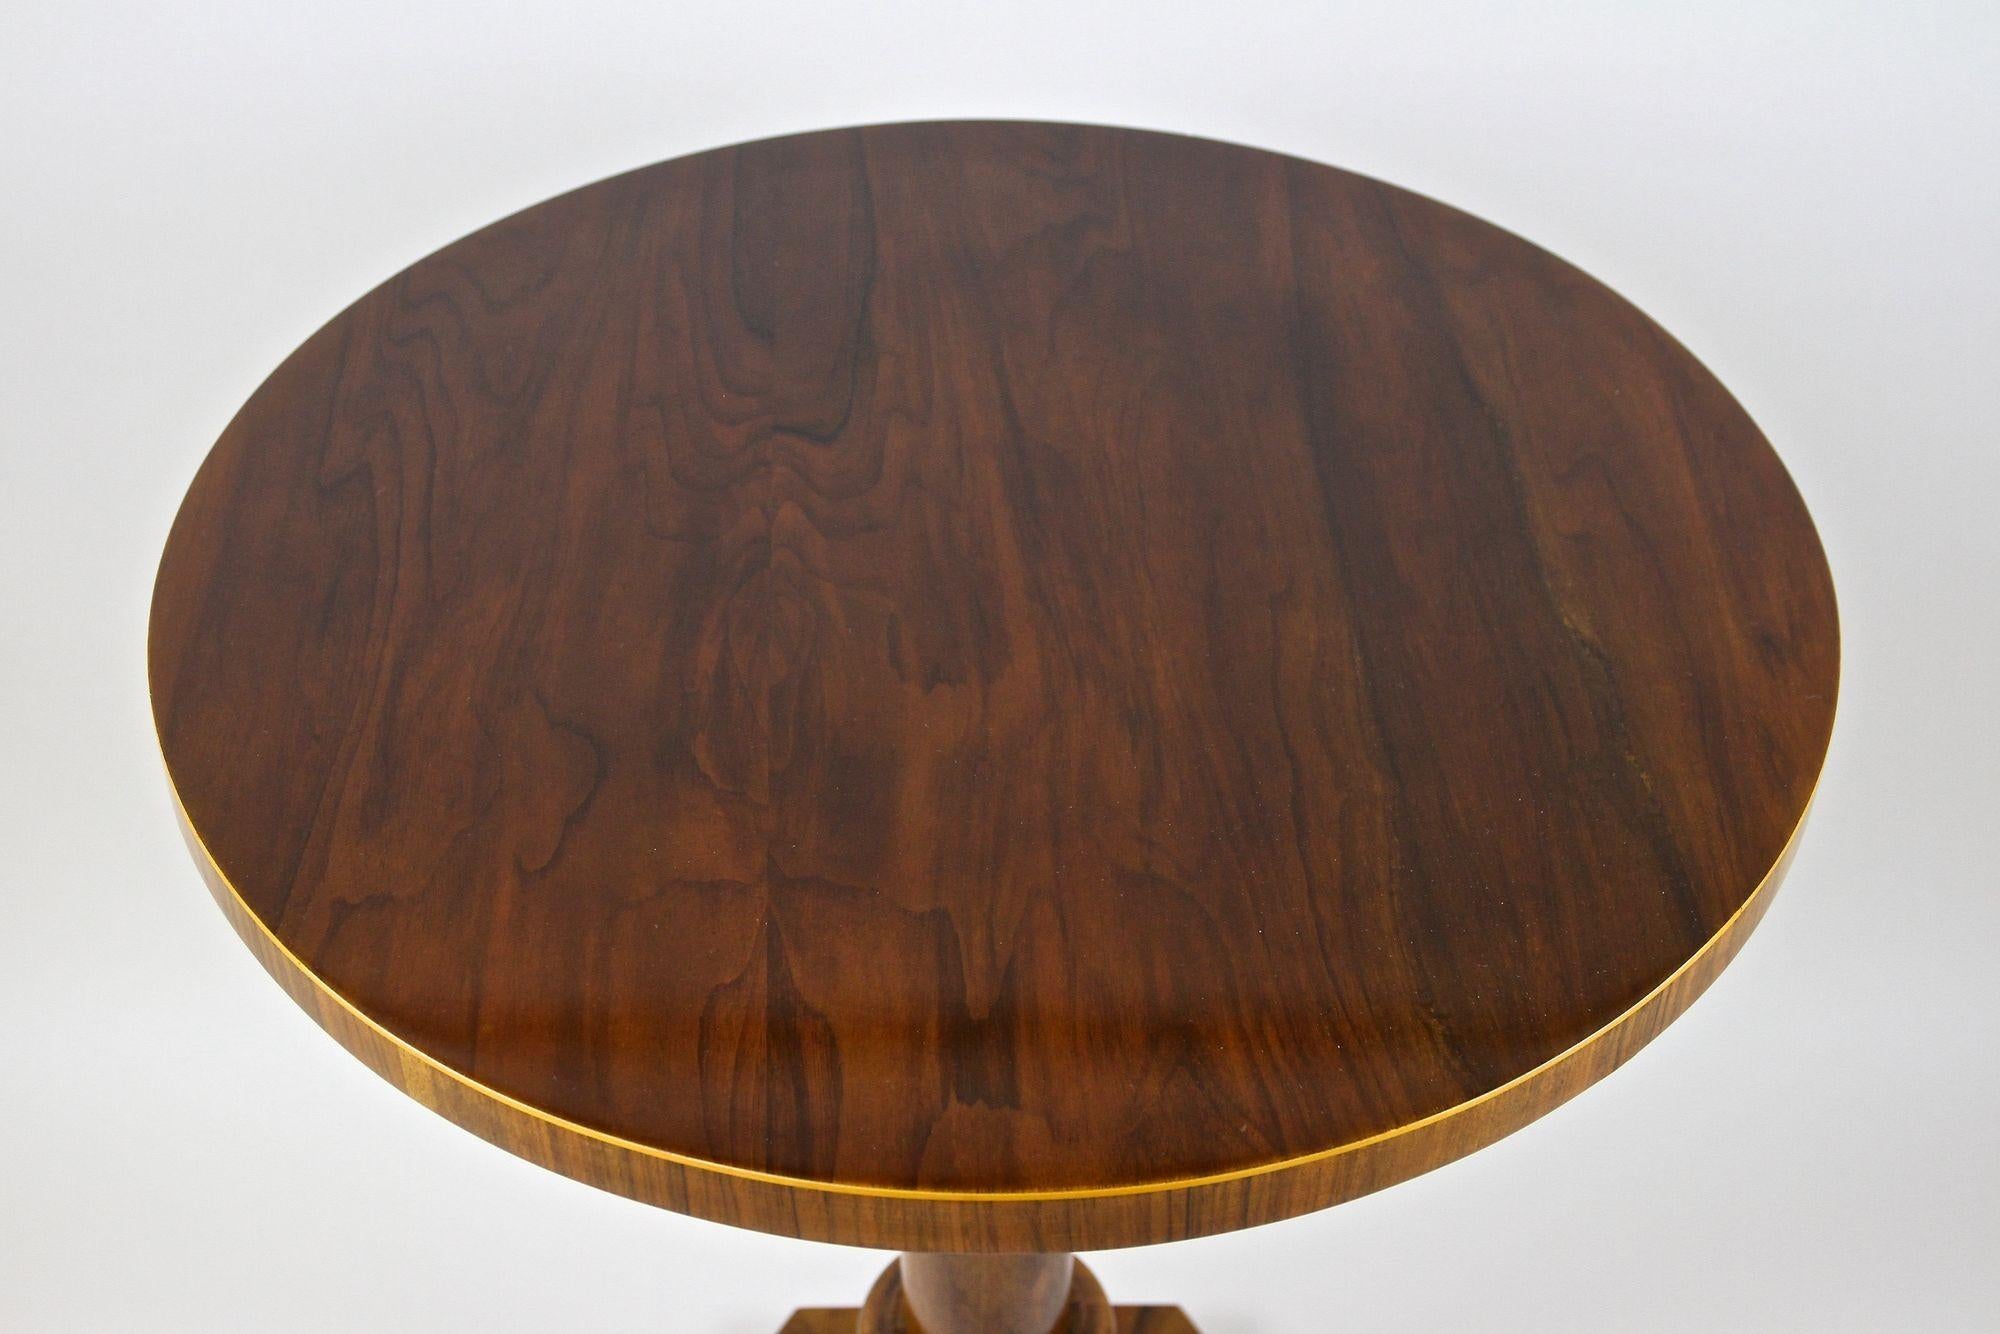 Außergewöhnlicher Art Deco Beistelltisch aus Nussbaumholz aus der Zeit um 1920 in Österreich. Dieser einzigartige runde Art-Déco-Tisch besticht durch seine kunstvolle Ausführung. Ein wirklich fantastisch aussehender Beistelltisch aus dem frühen 20.